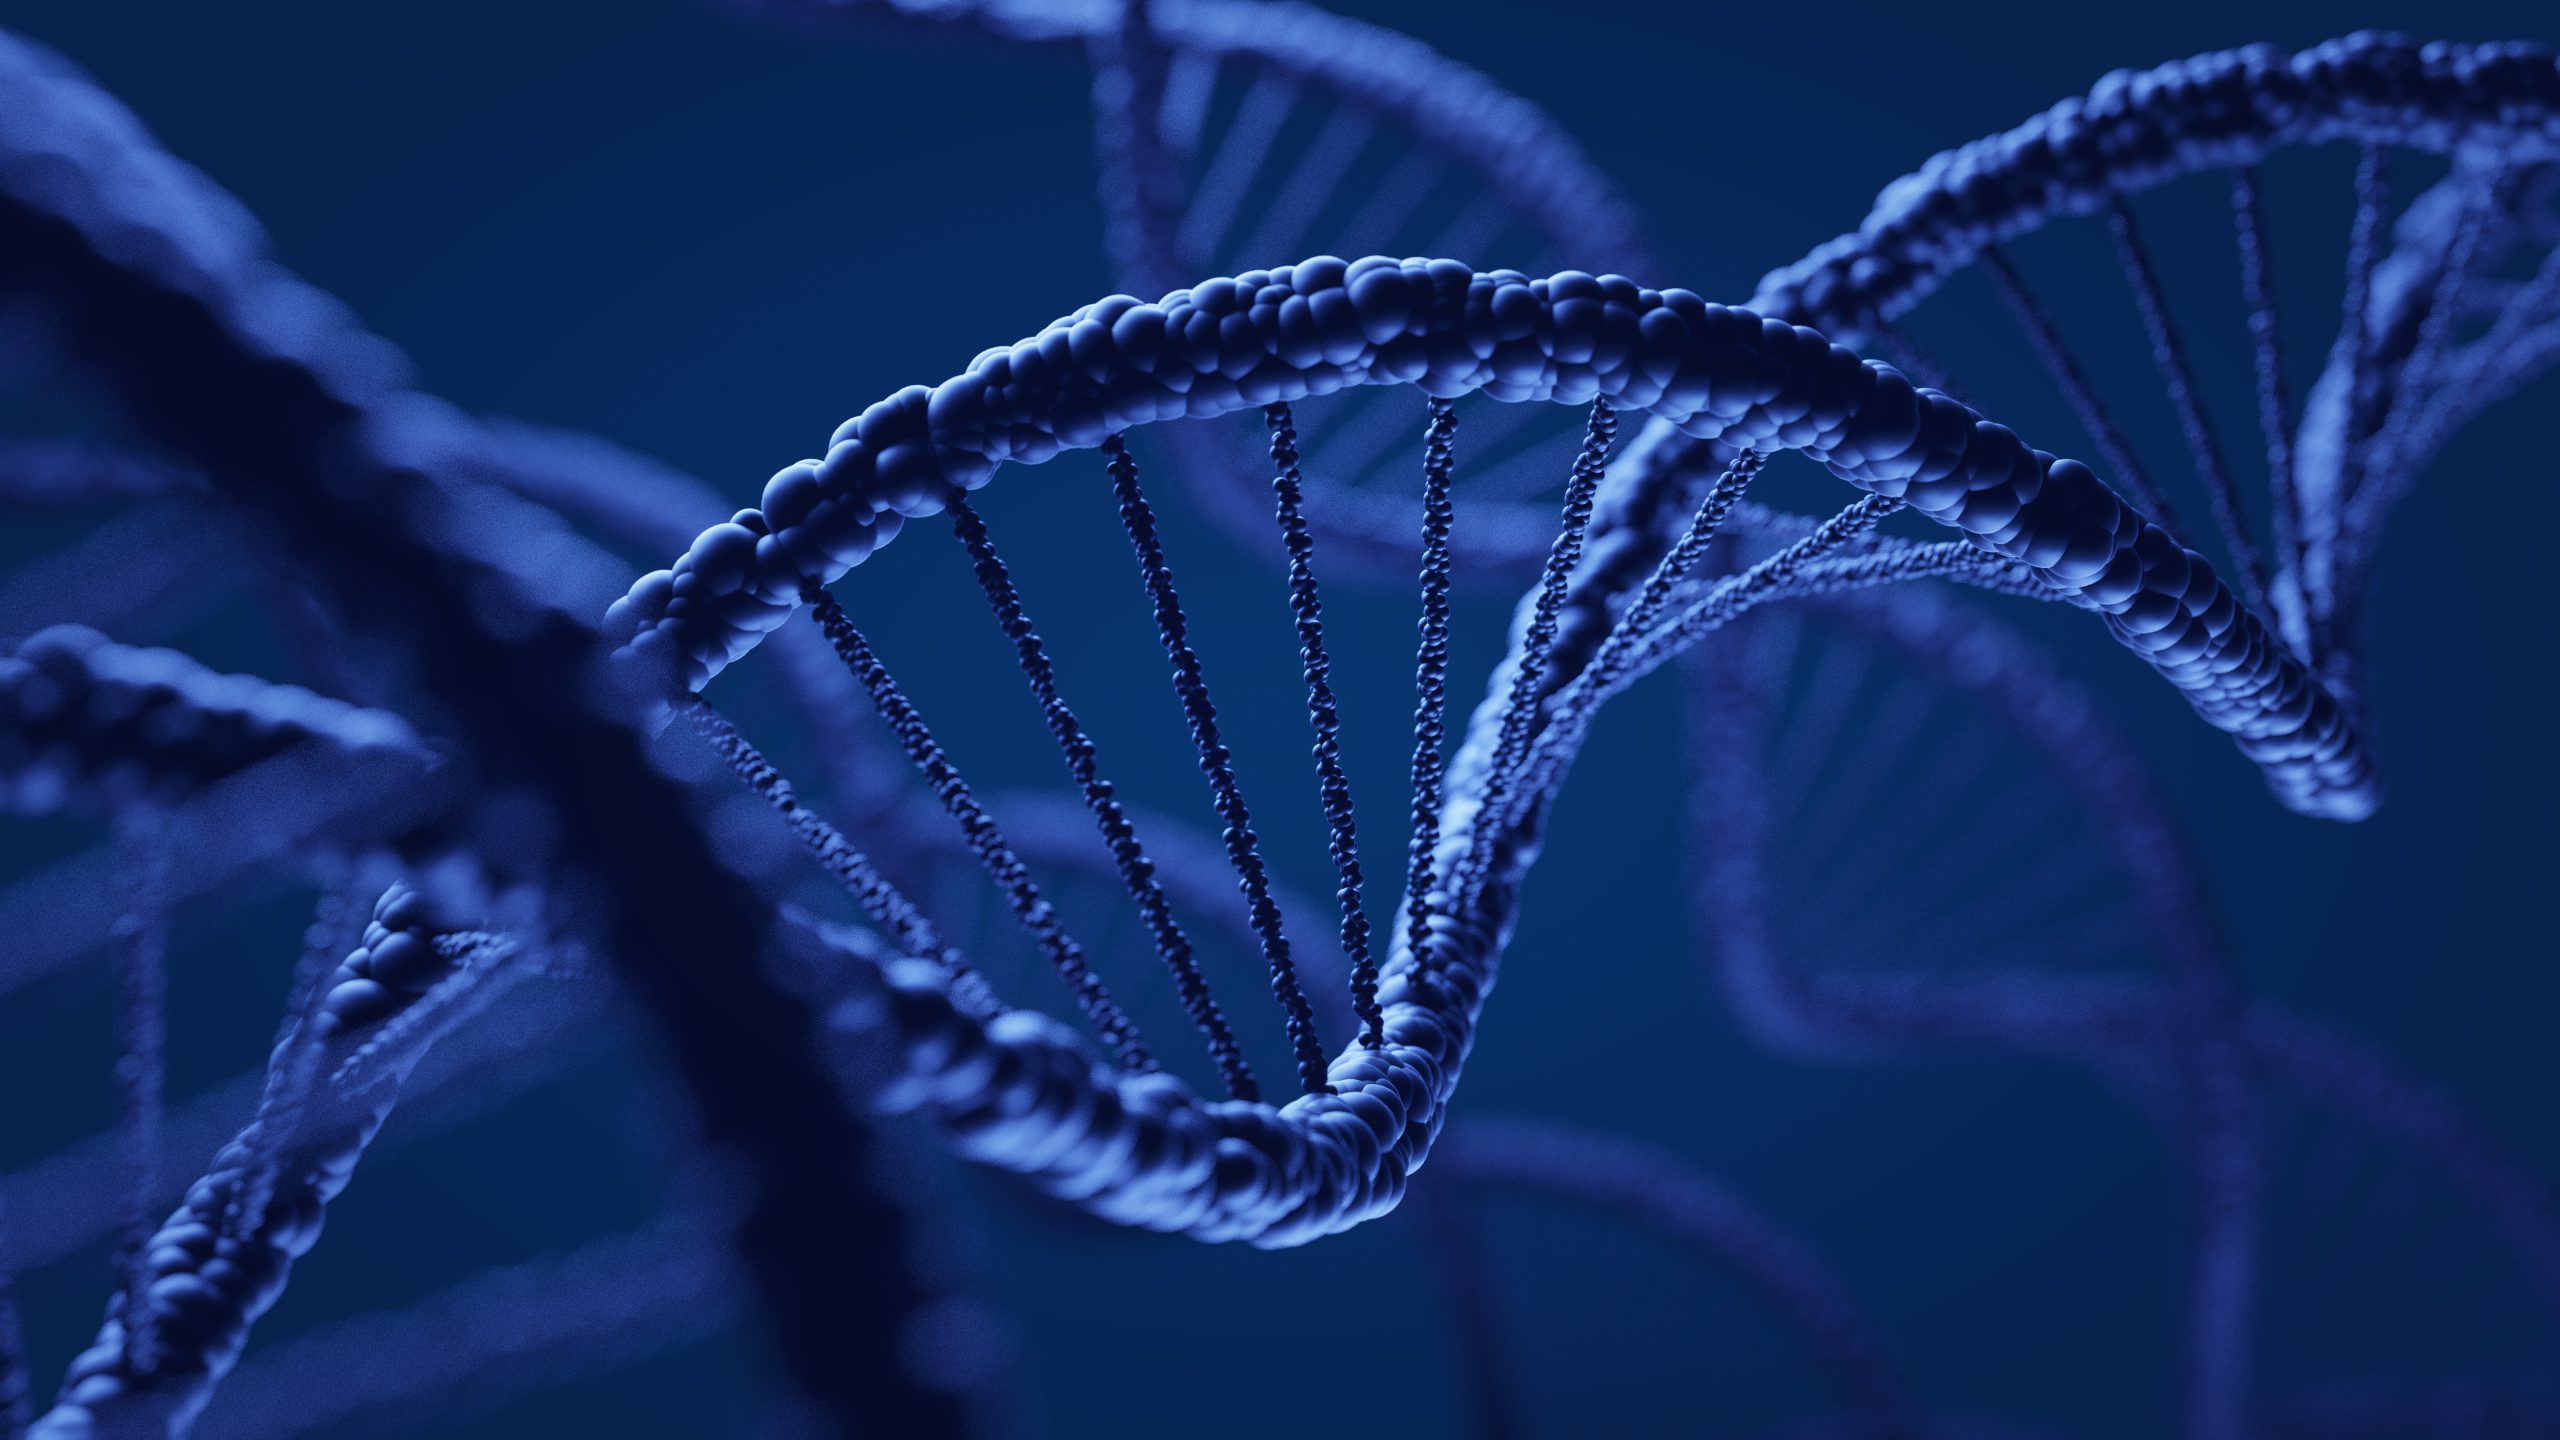 Close up illustration of DNA strand against dark blue background